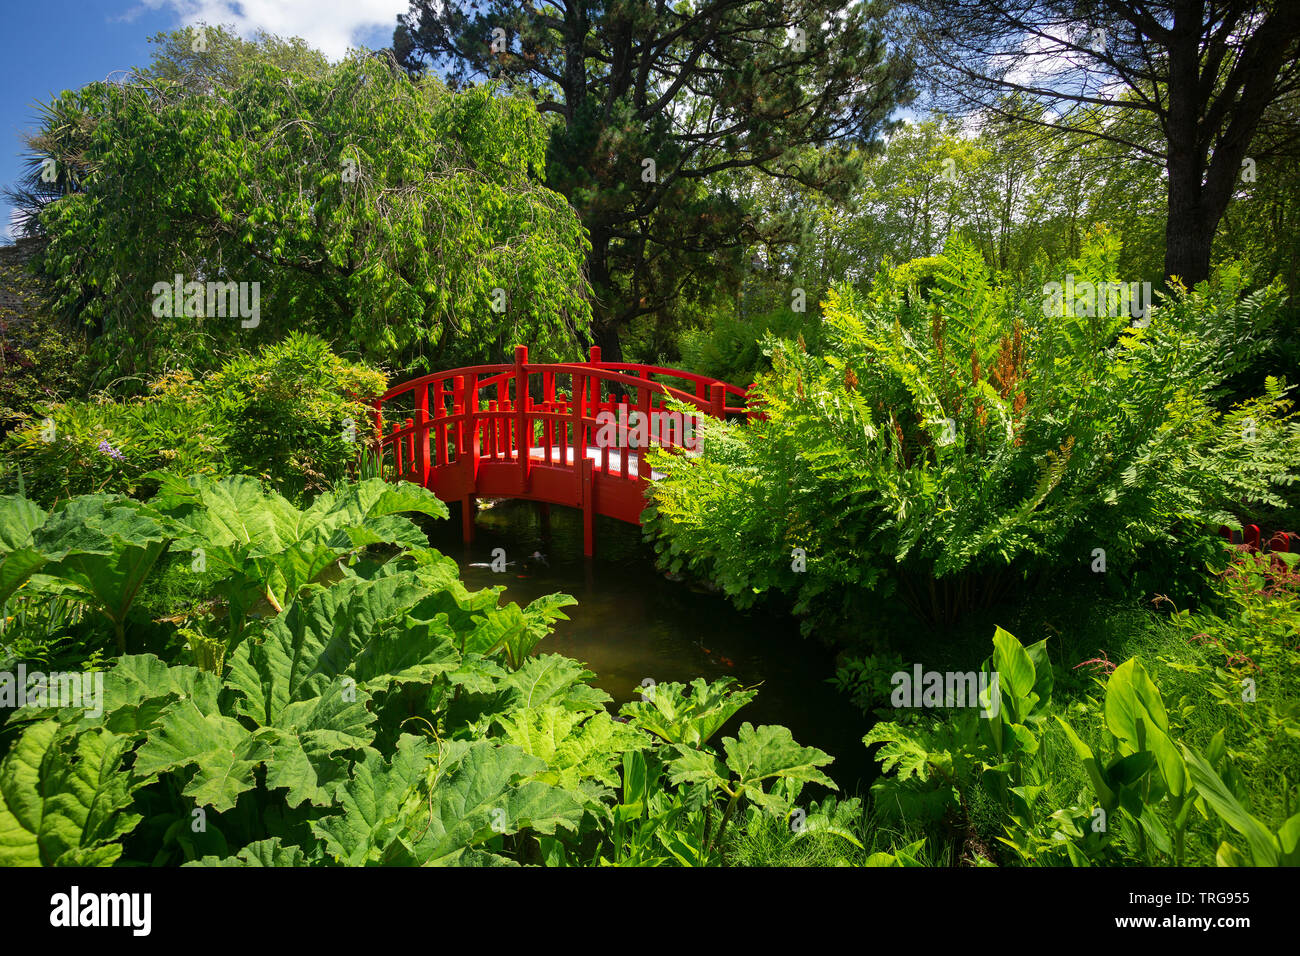 Il piccolo rosso passerella in legno di Bayonne giardino botanico (Francia). Questo giardino ornamentale è stato stabilito in base ad un modello giapponese. Foto Stock